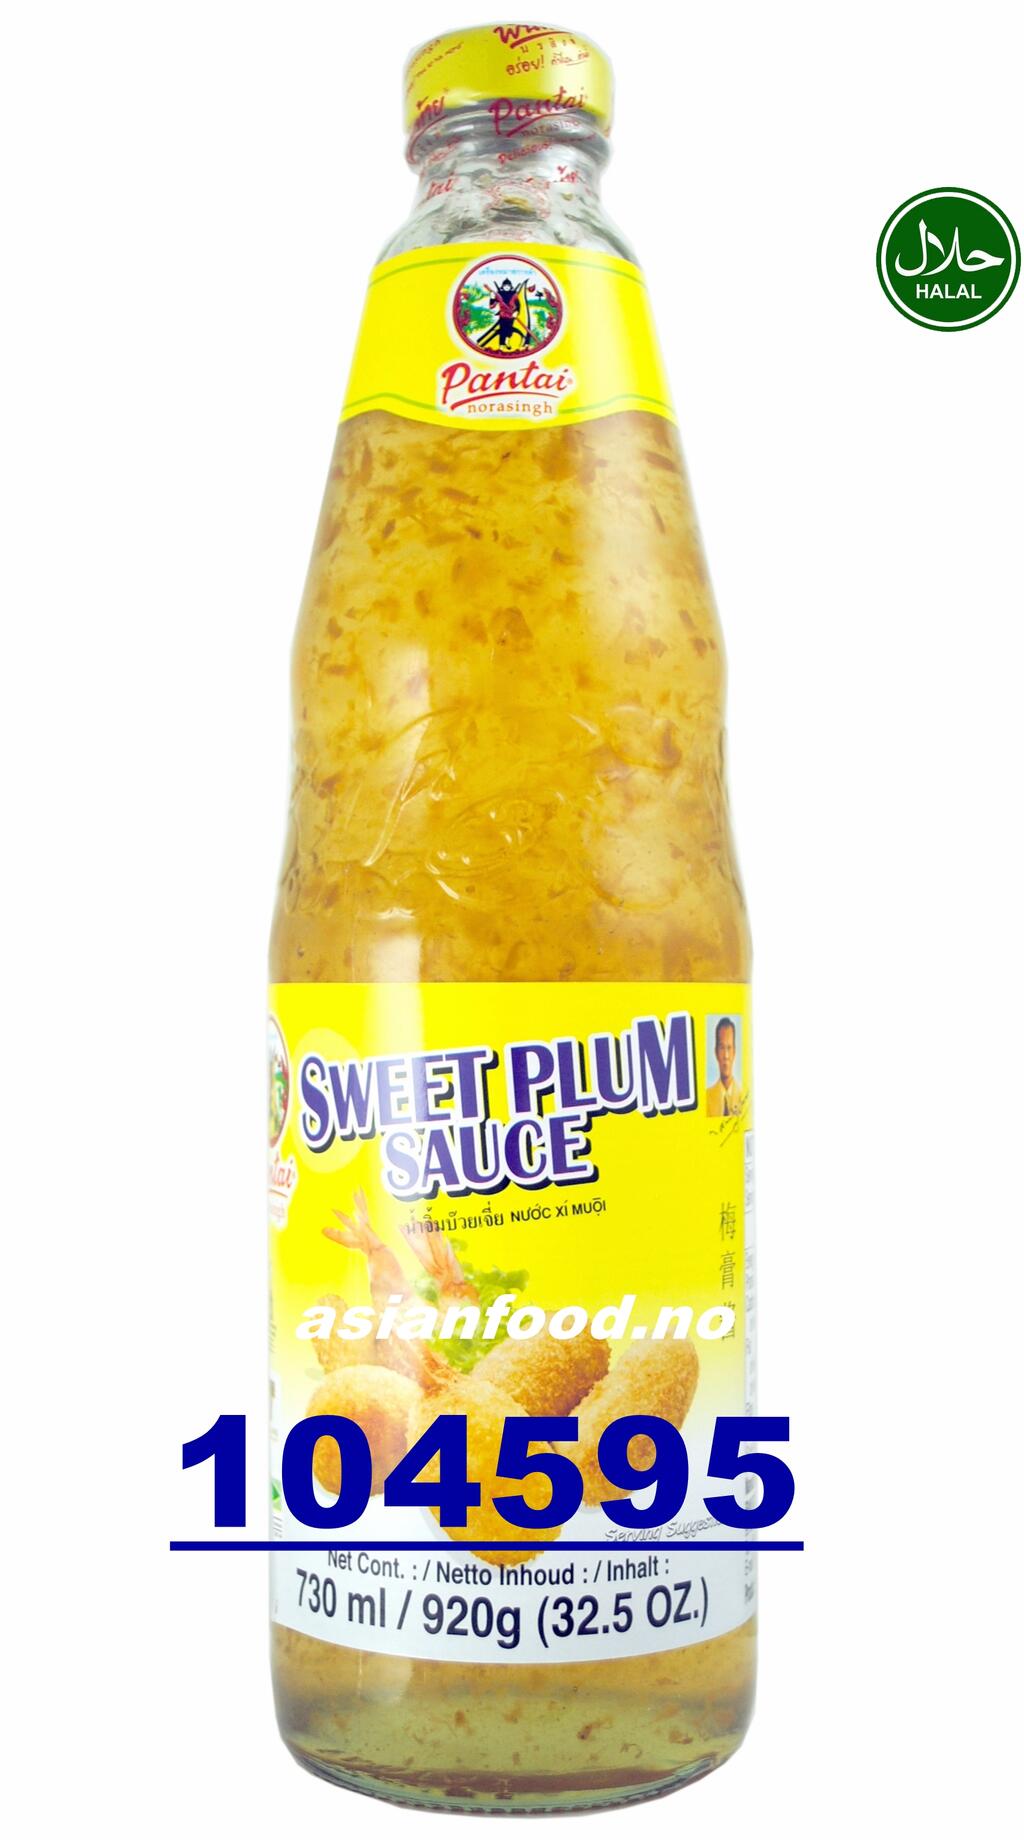 PANTAI Sweet plum sauce 12x730ml Sot man TH - Asian Food Import AS